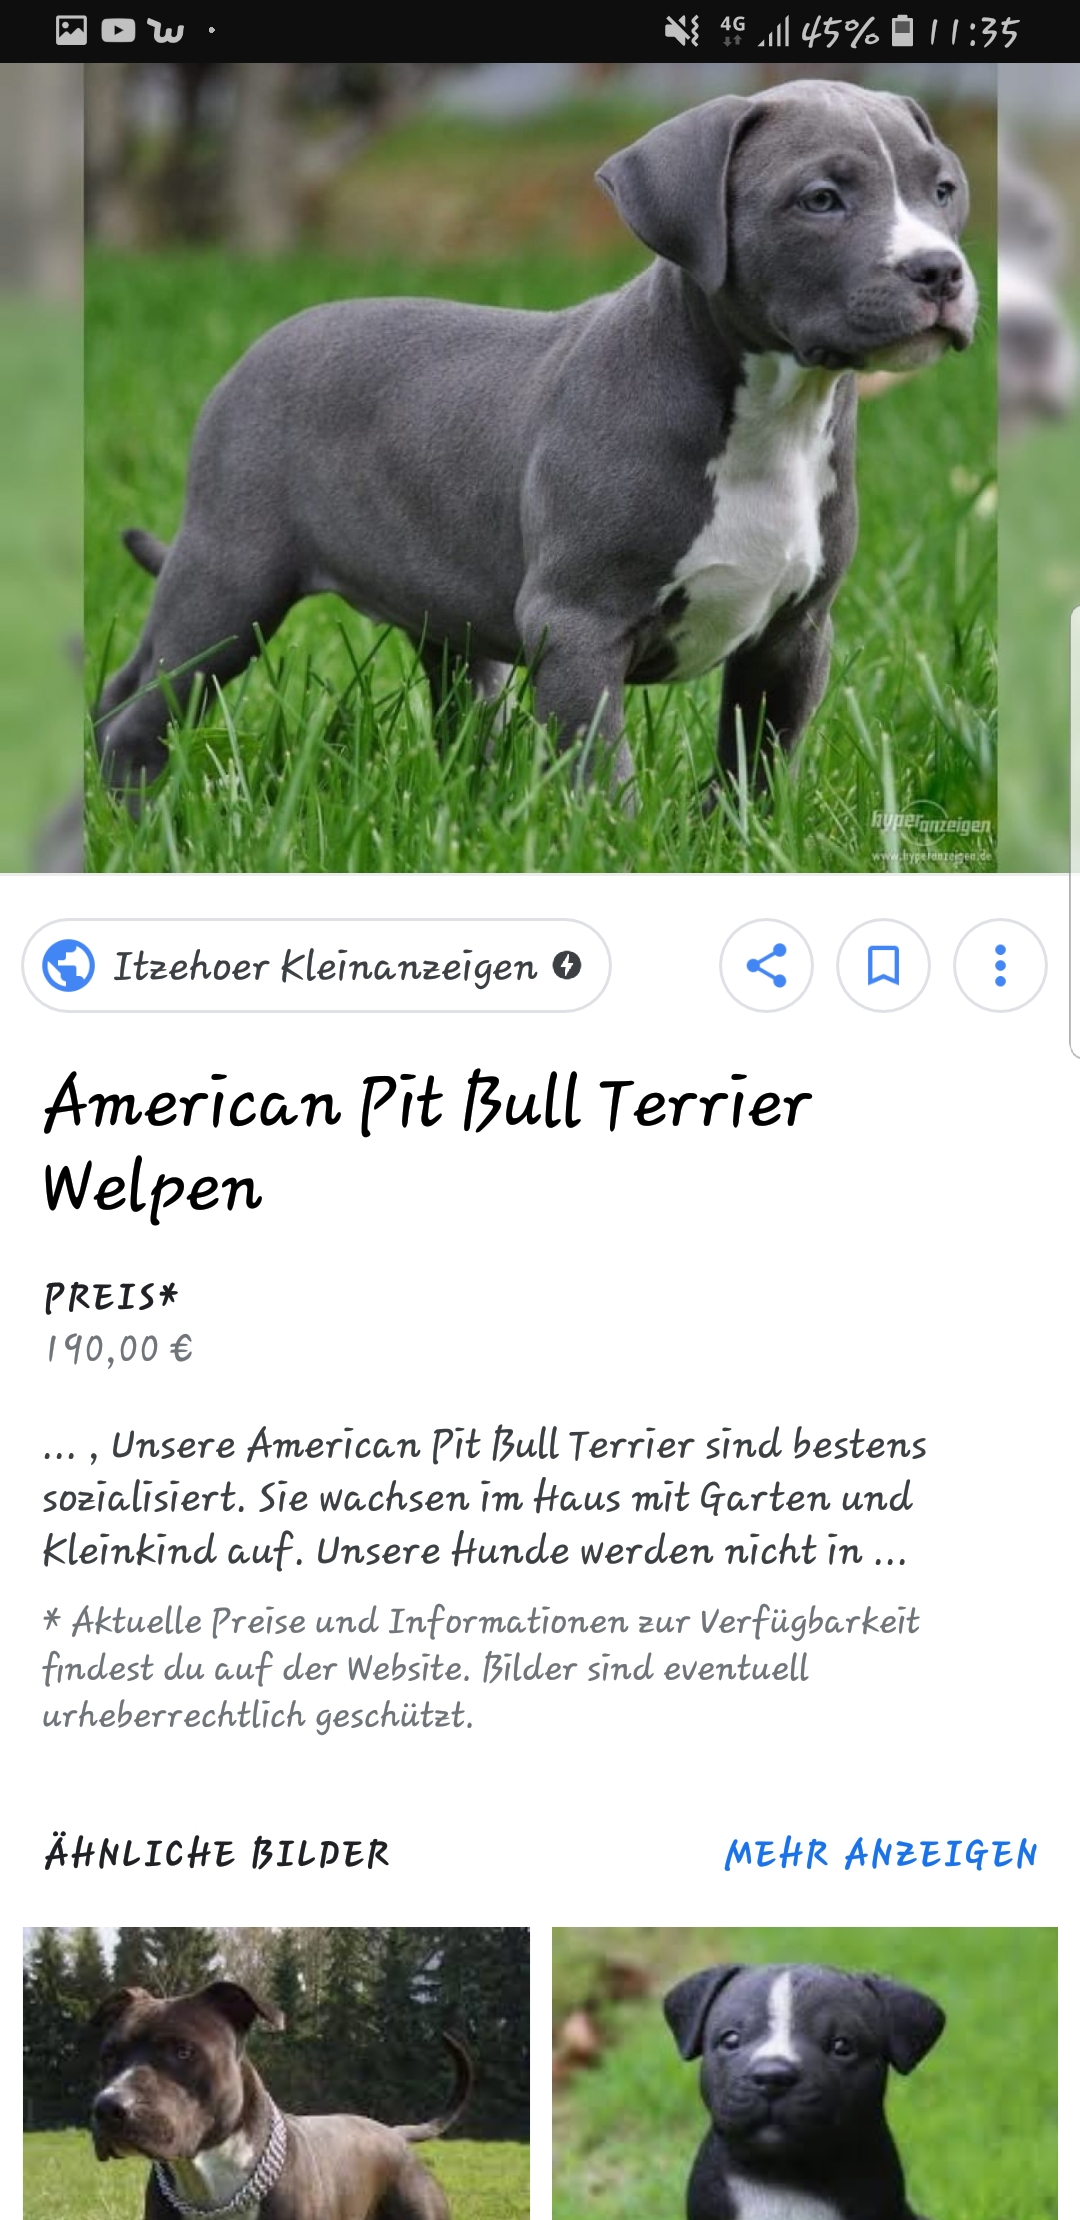 Lebt noch jemand mit einem pitbull in Brandenburg? (Hund)